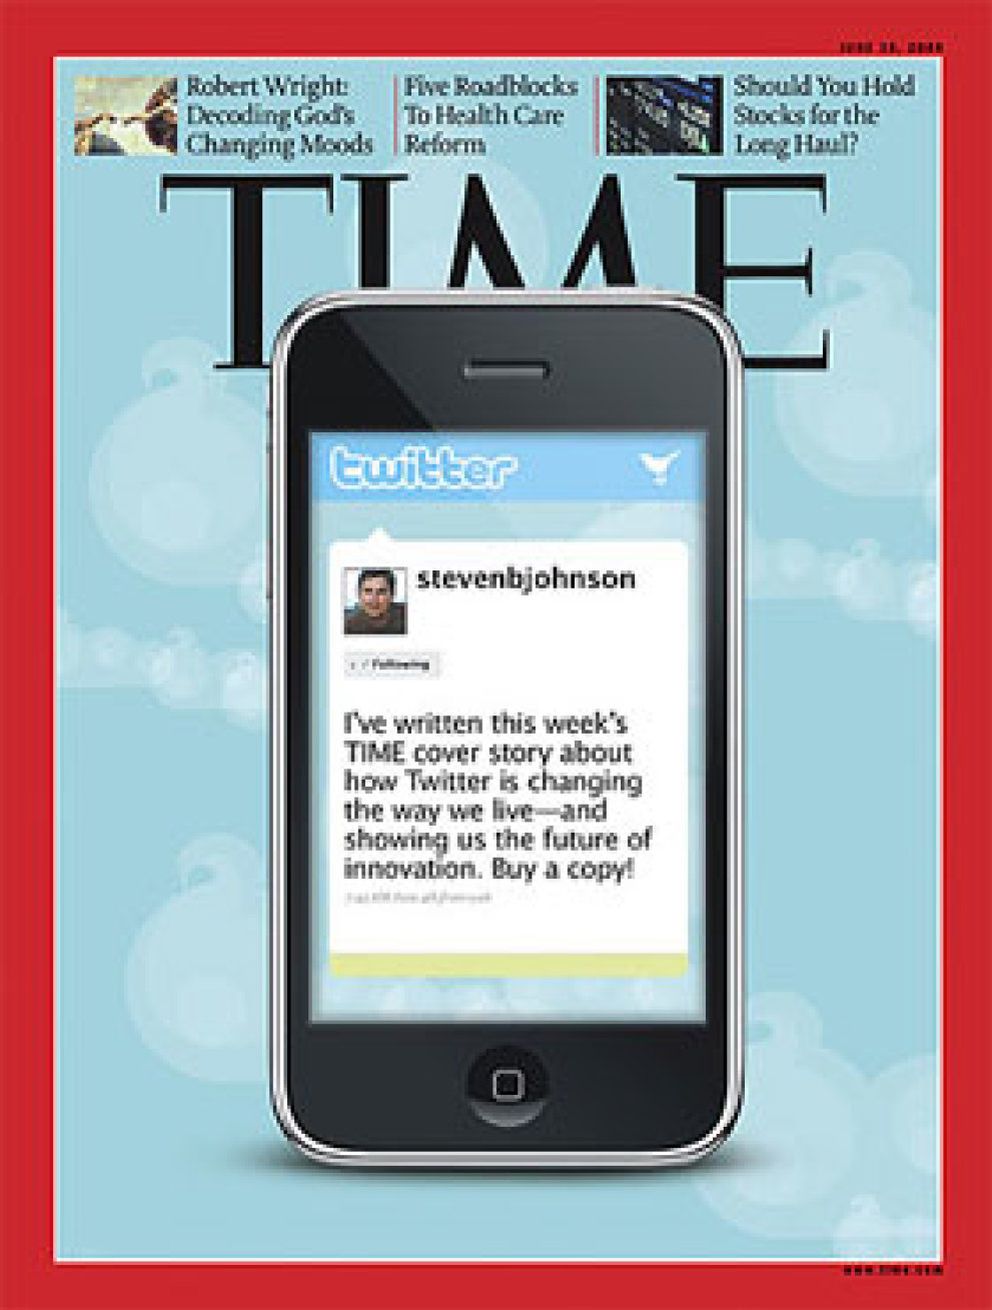 Foto: La revista Time se derrite ante Twitter: “El invento que cambió nuestras vidas”